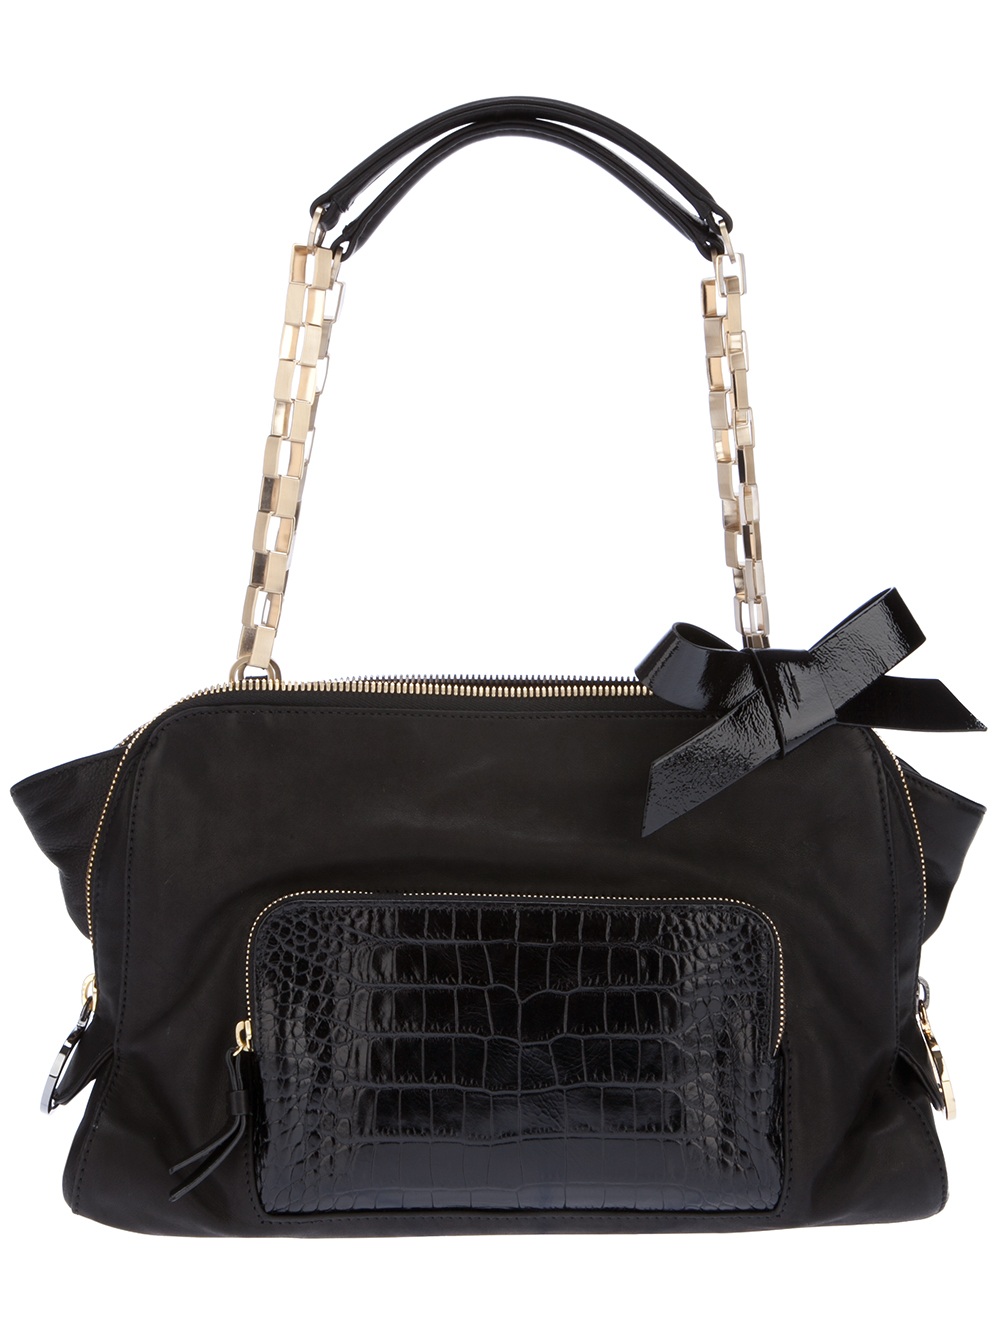 Paule Ka Chain Handle Bag in Black | Lyst